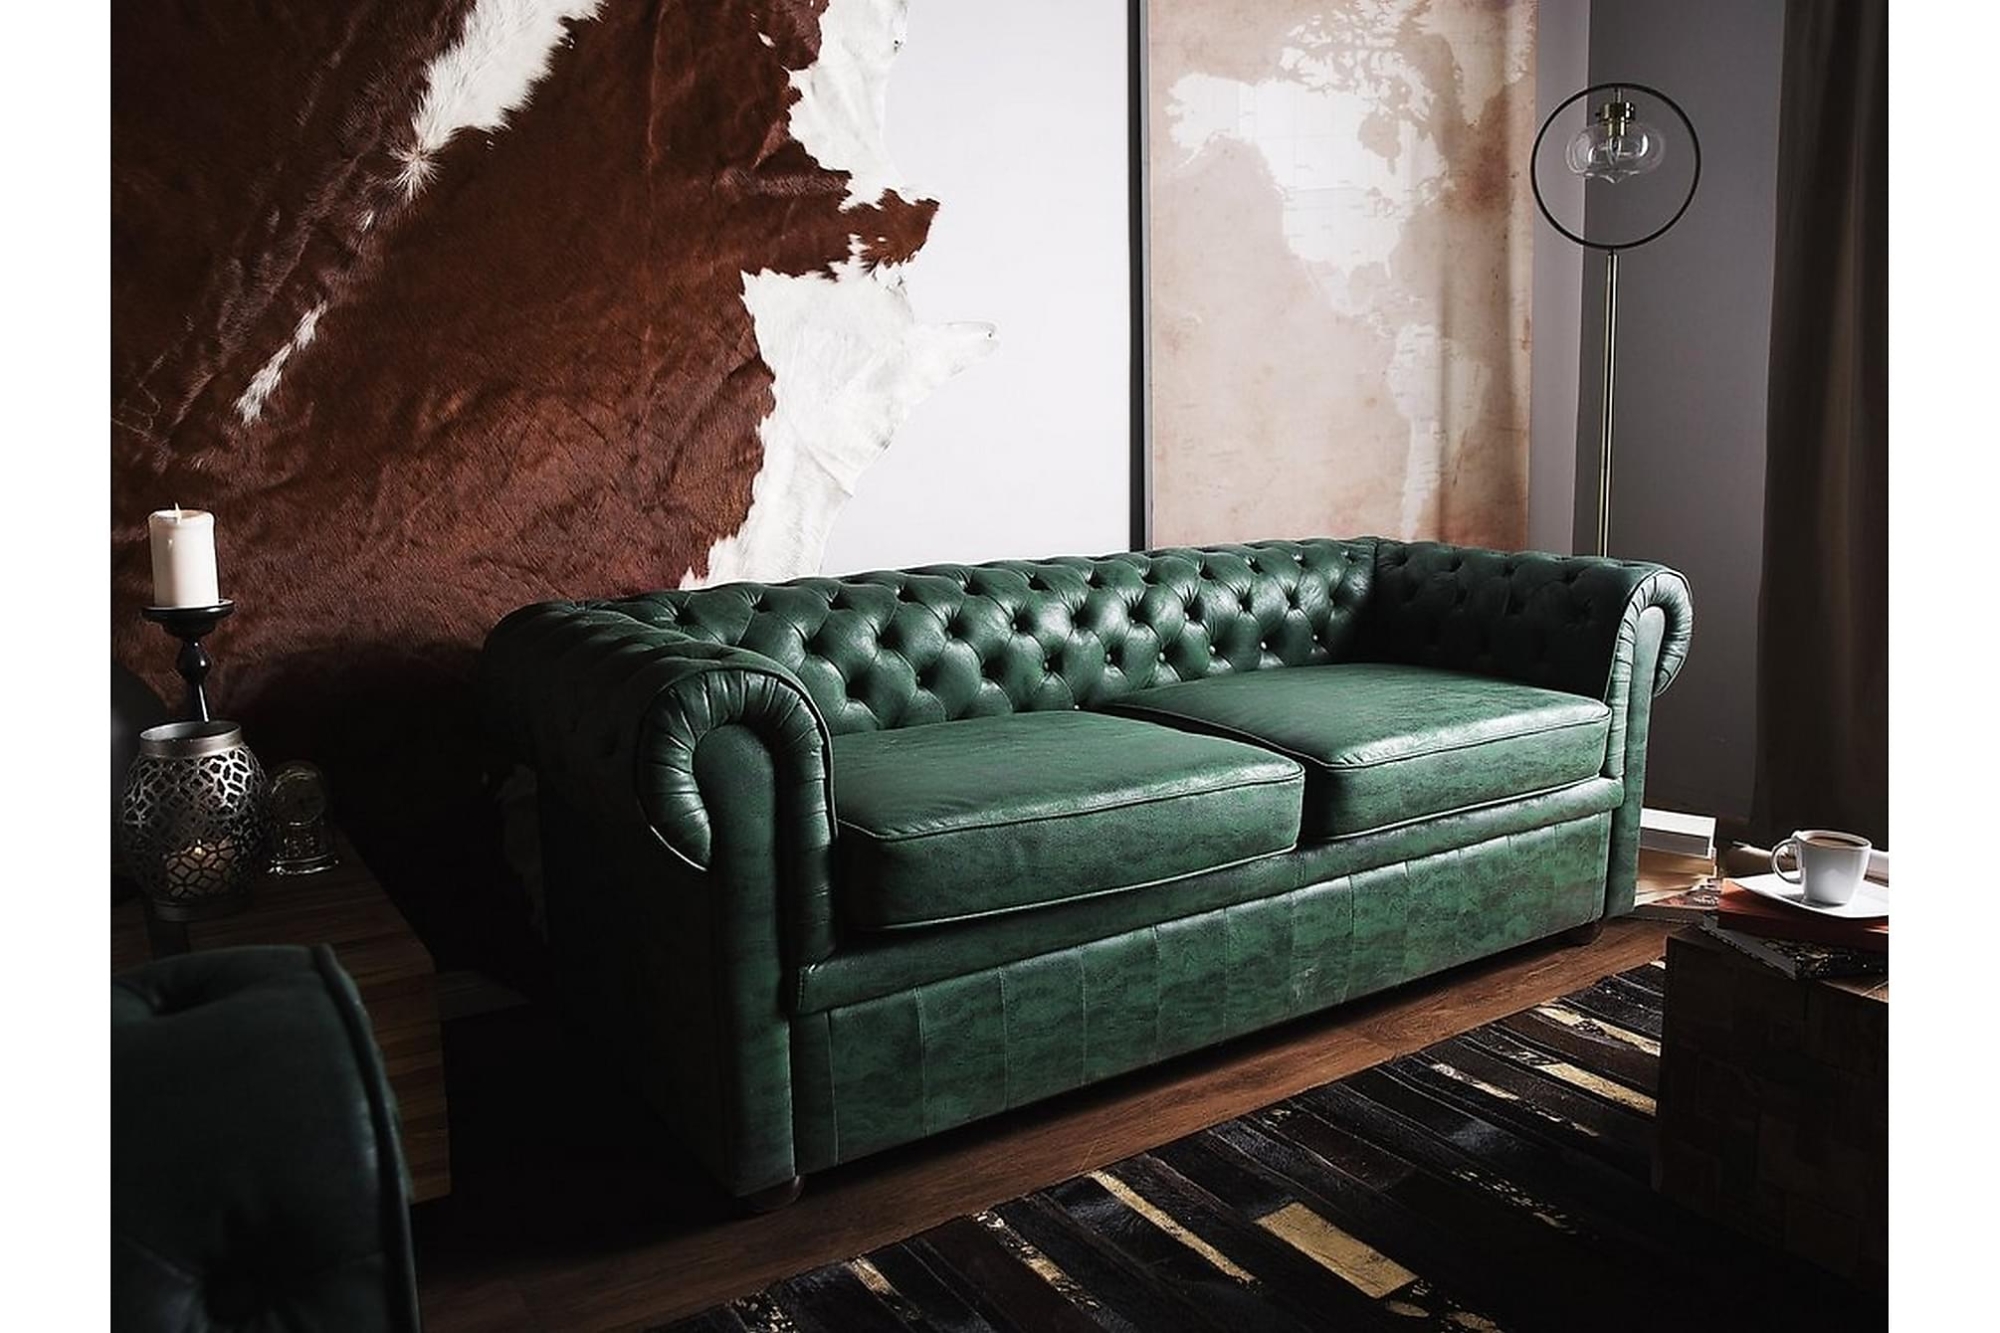 Grøn sofa